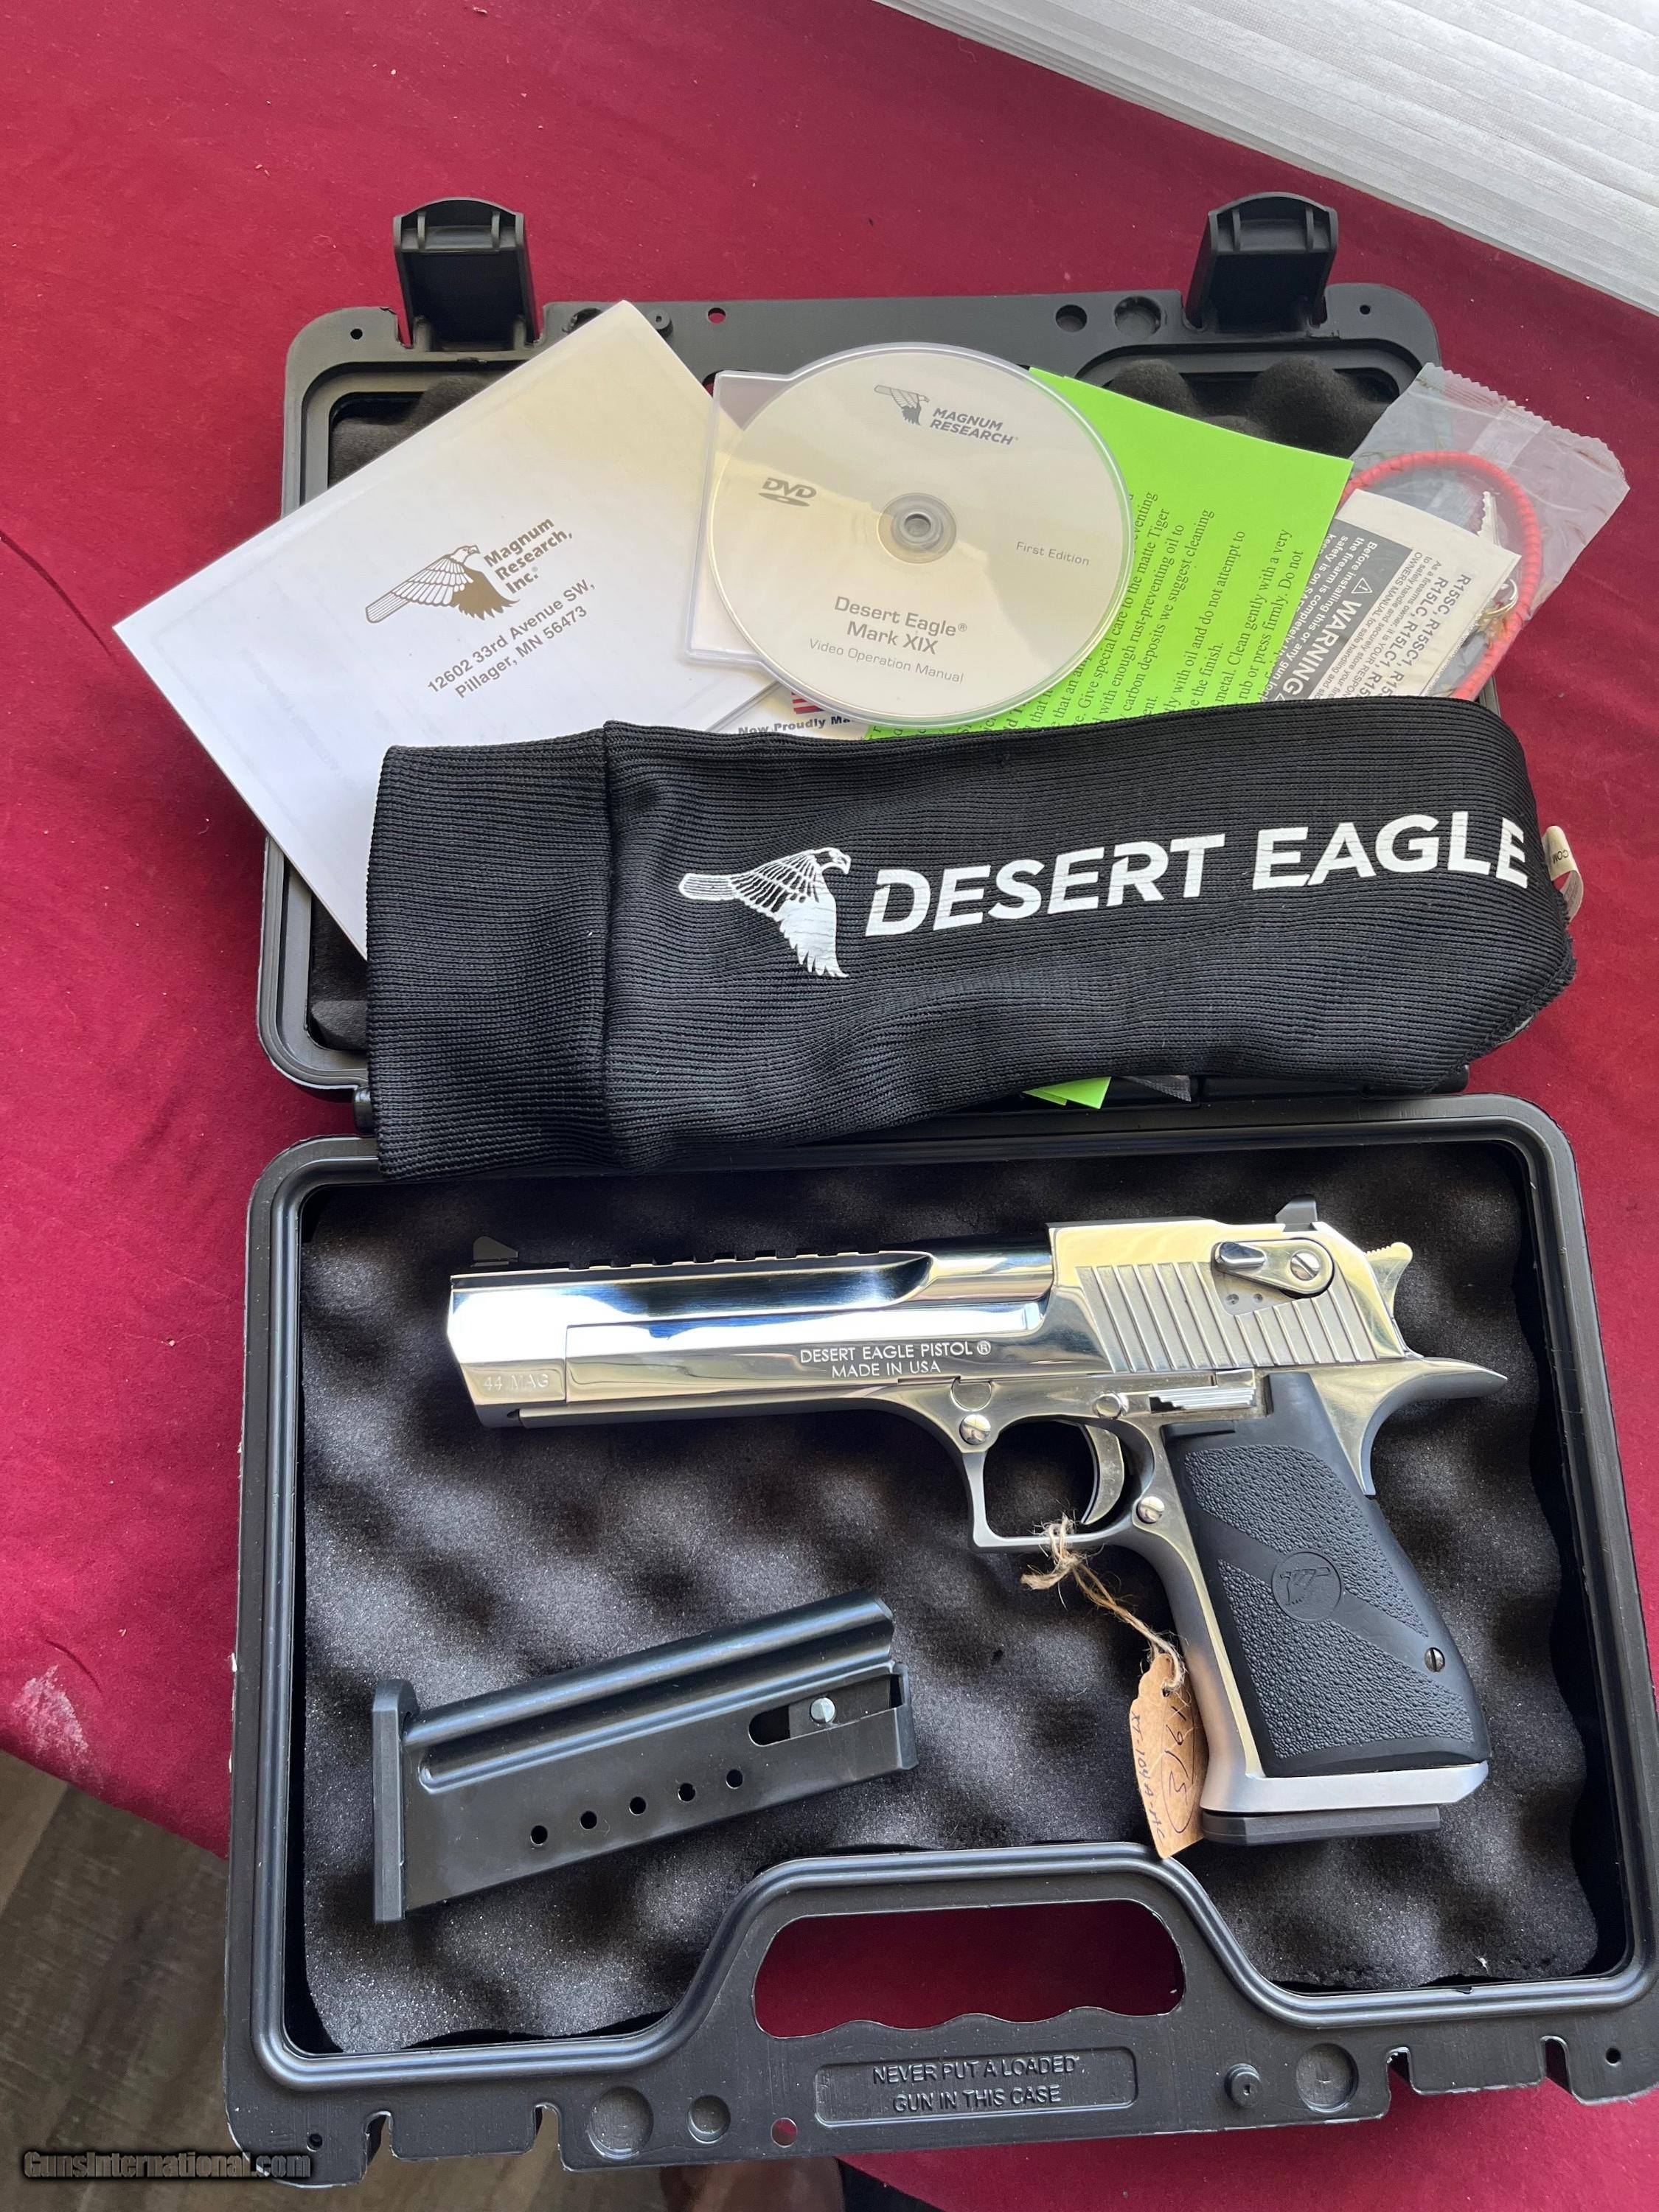 New finishes for the Desert Eagle pistols